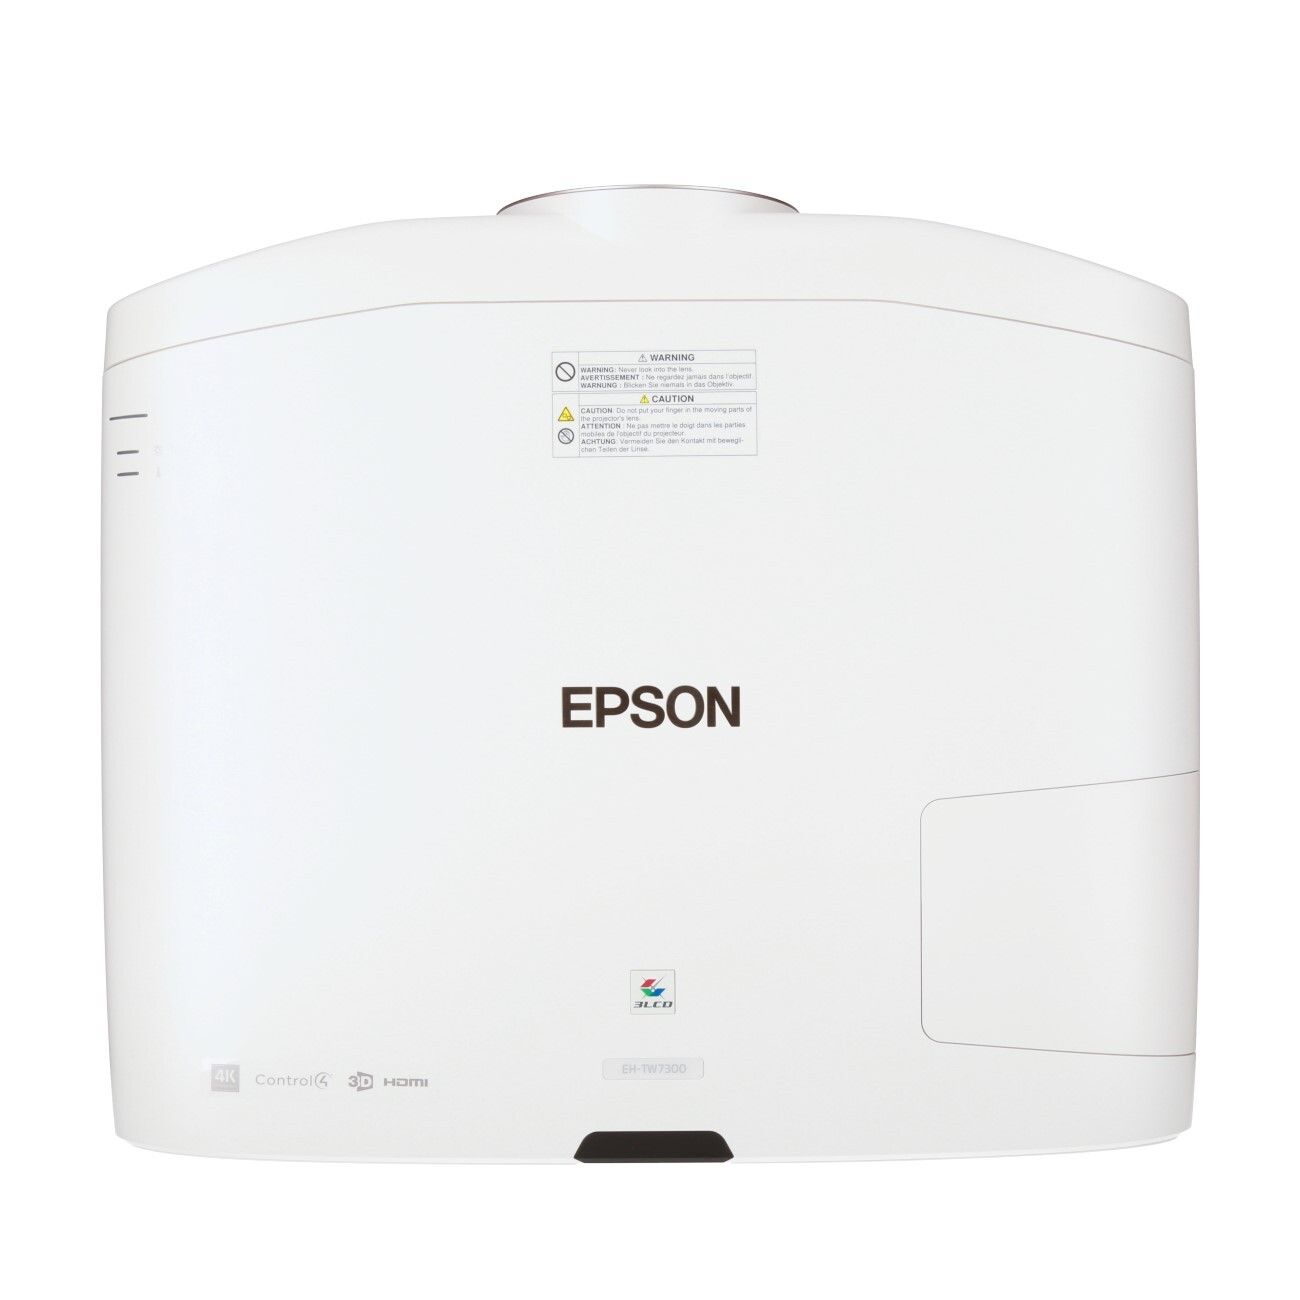 Epson-EH-TW7300